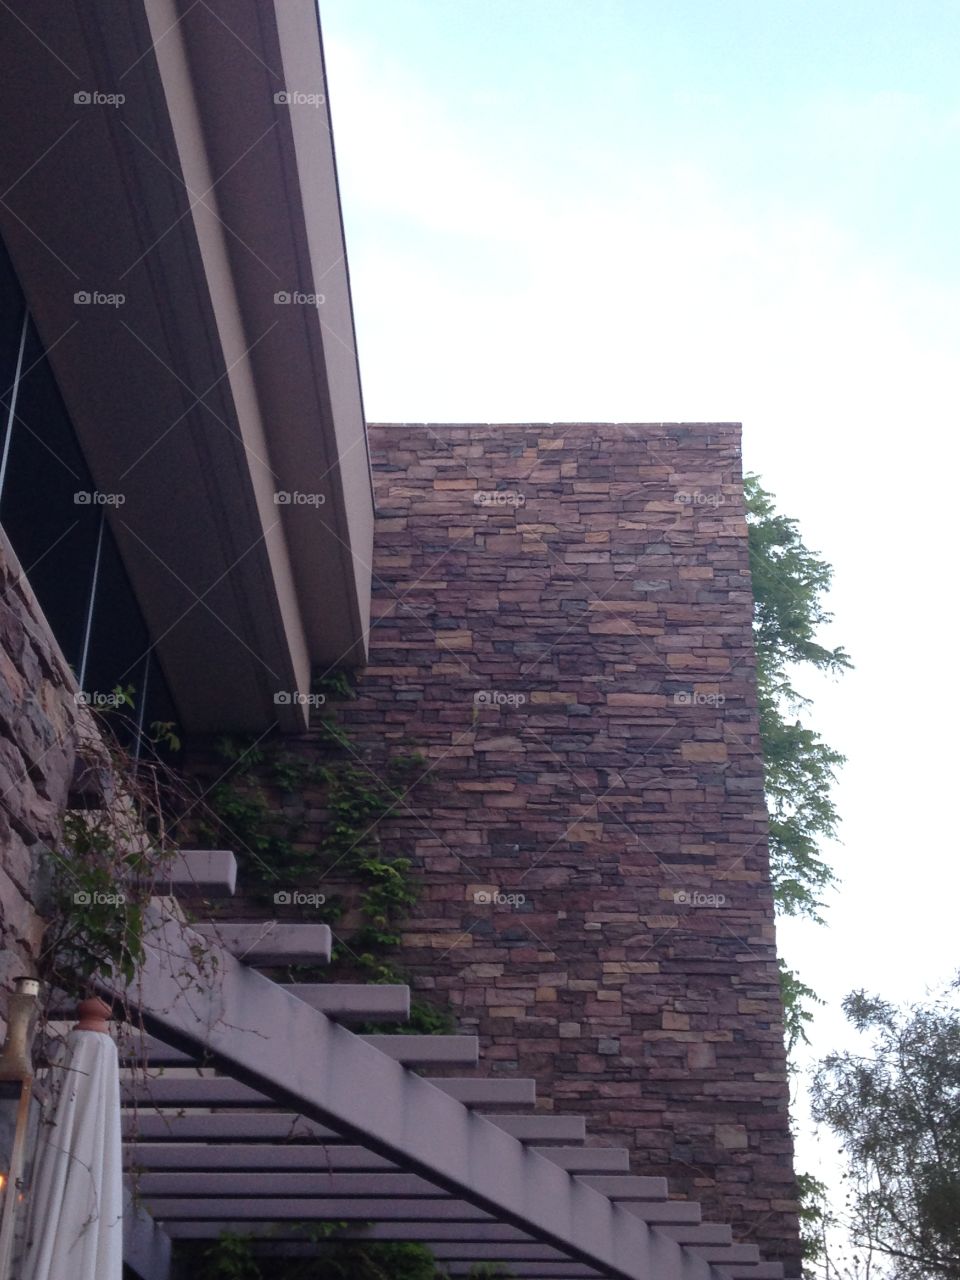 Looking up at outdoor decorative brick wall